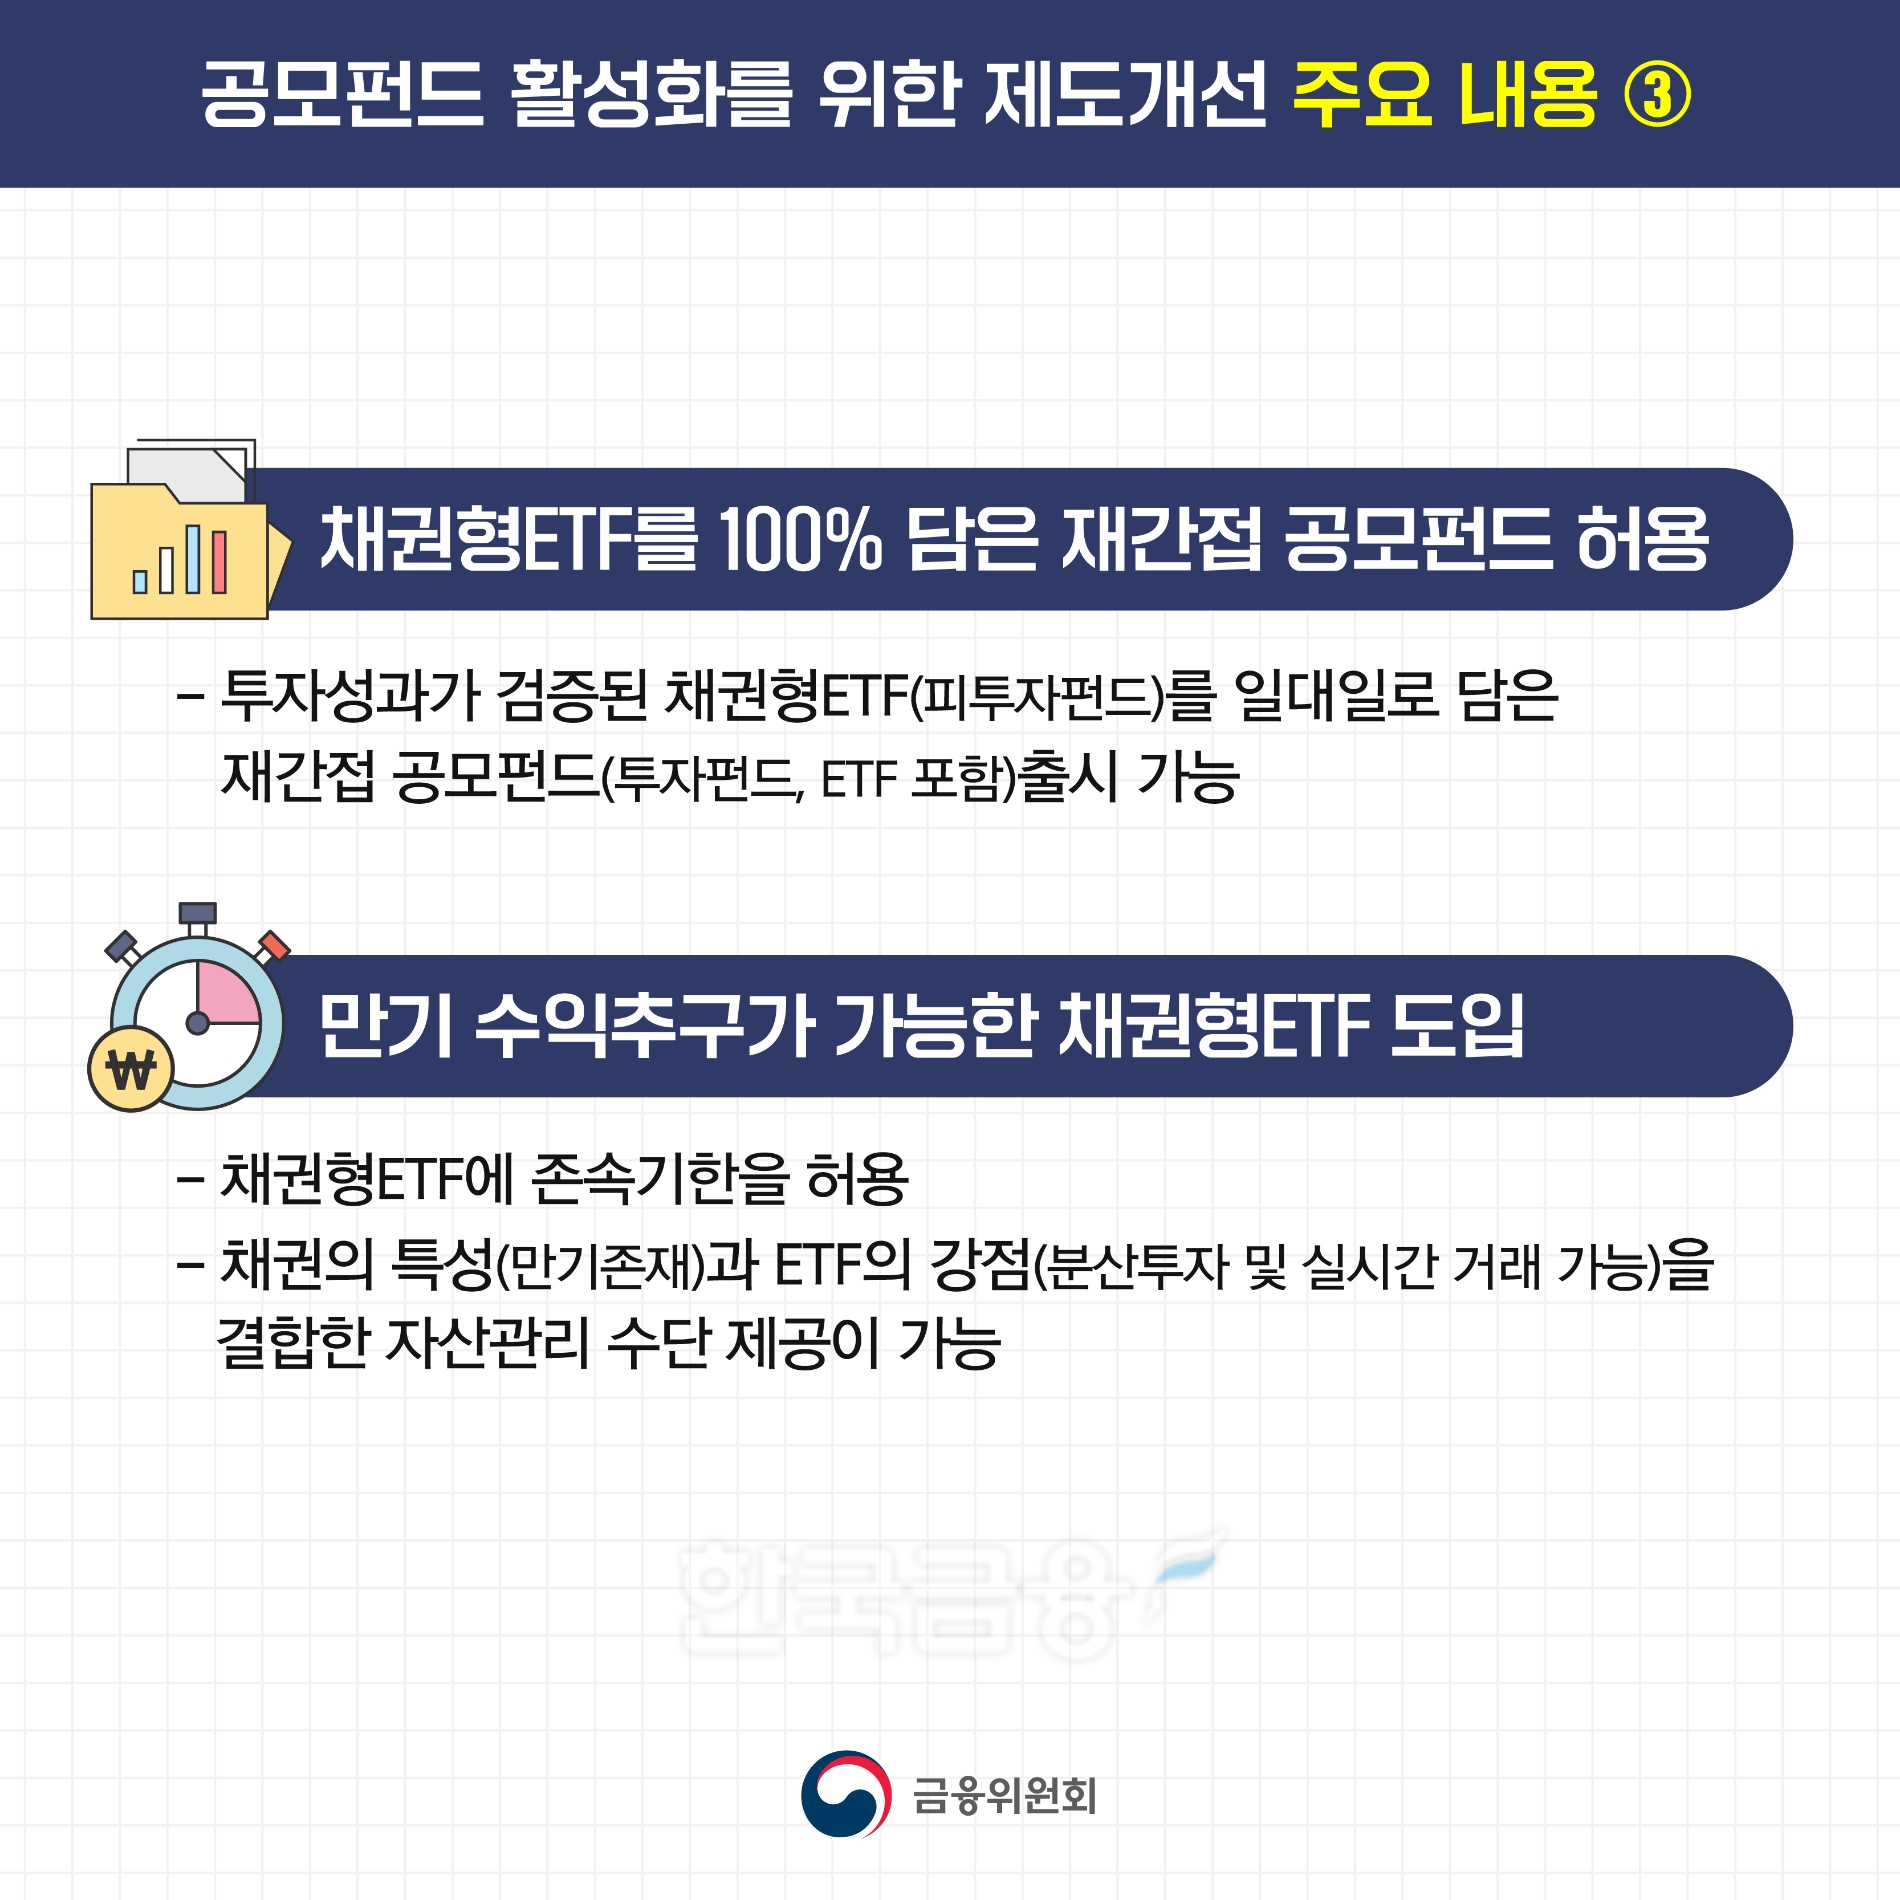 공모 펀드 활성화를 위한 제도 개선 주요 내용./사진=금융위원회(위원장 김주현)